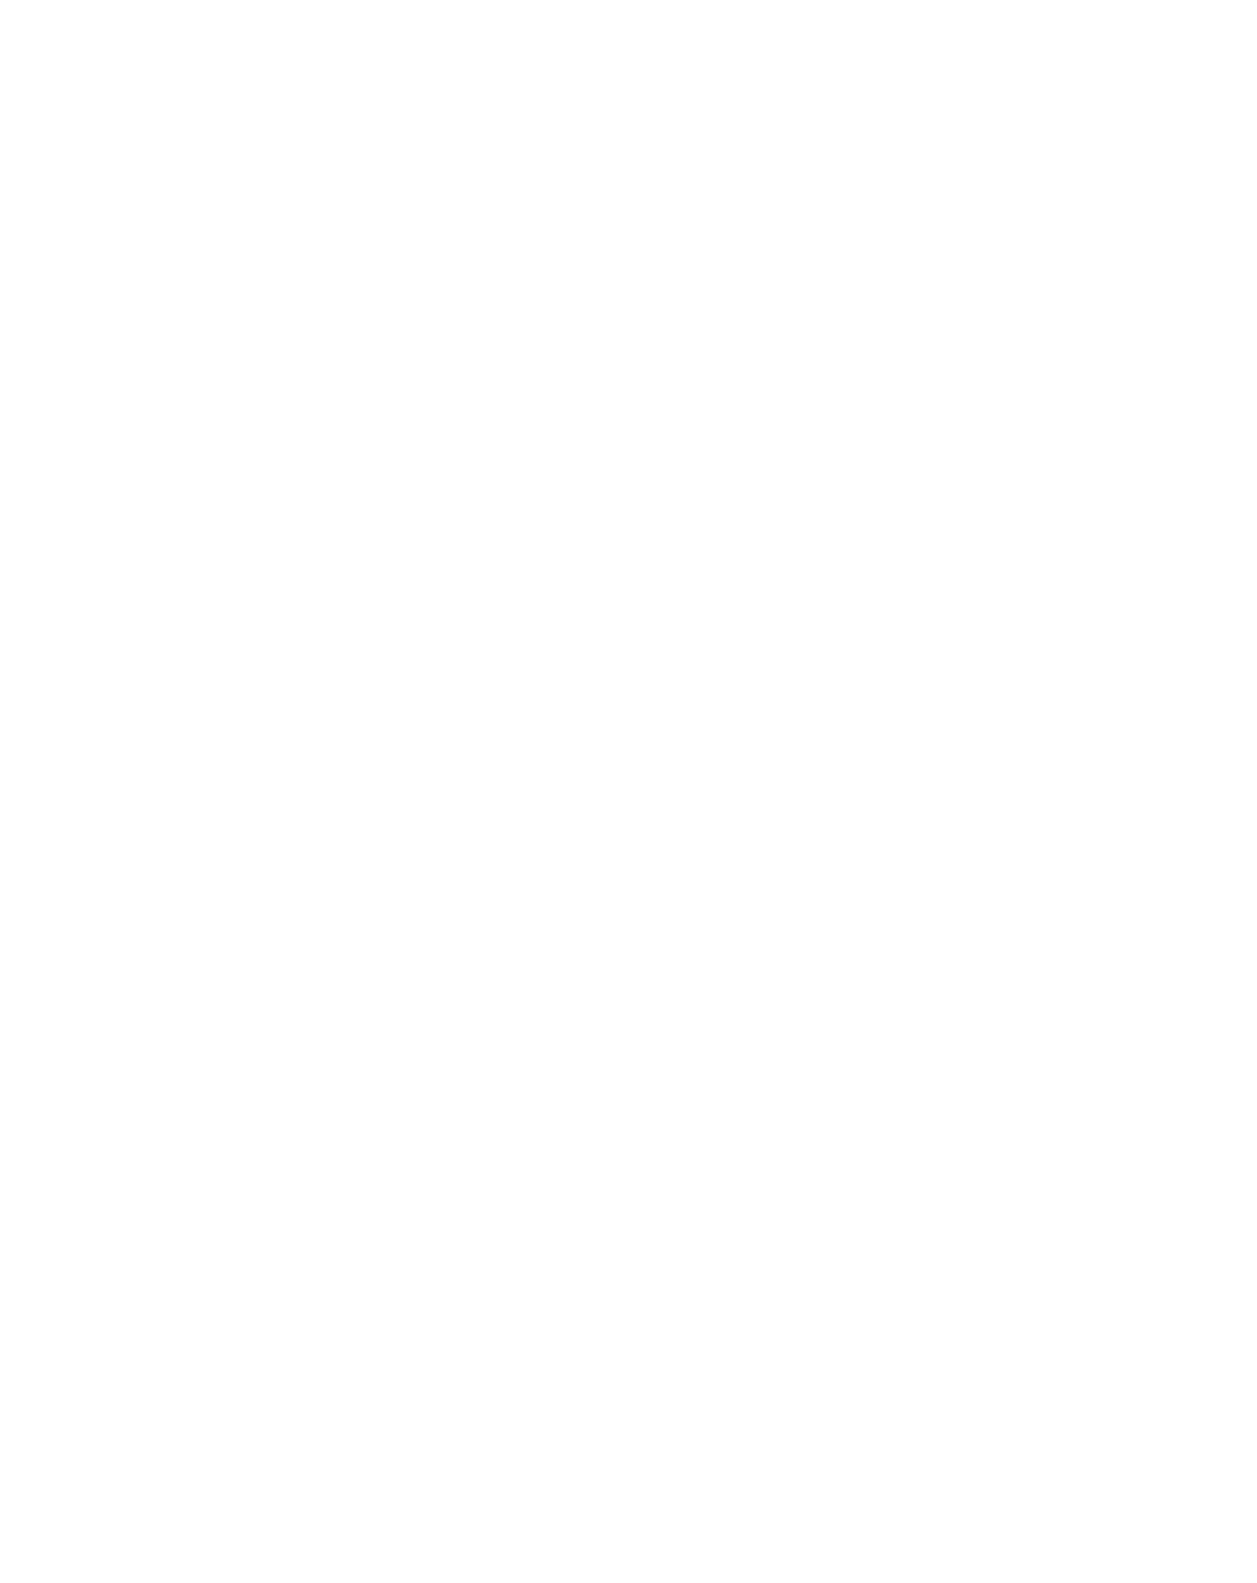 Logista (Compañía de Distribución Integral Logista) logo pour fonds sombres (PNG transparent)